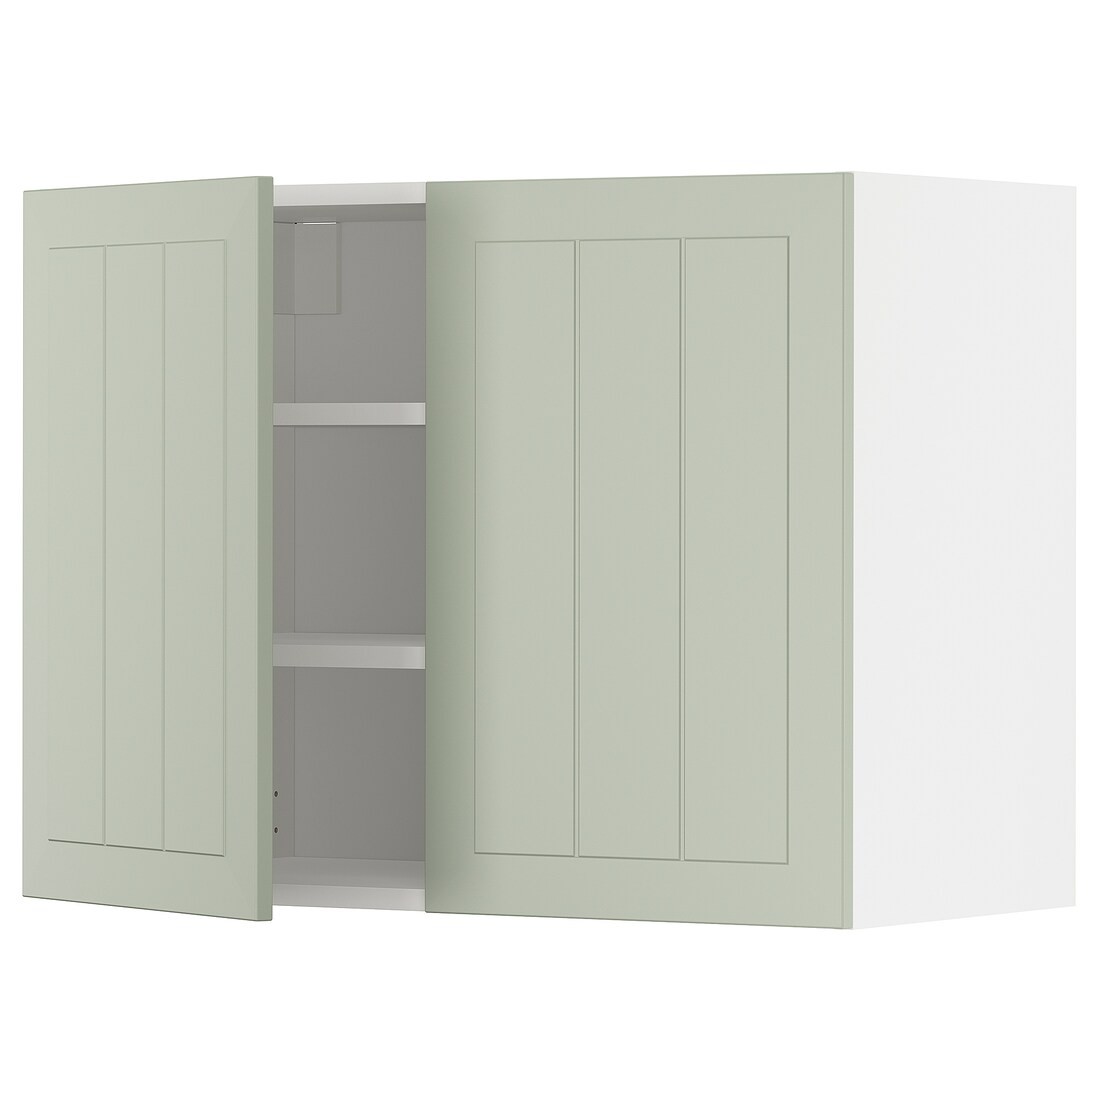 METOD МЕТОД Навесной шкаф с полками / 2 дверцы, белый / Stensund светло-зеленый, 80x60 см